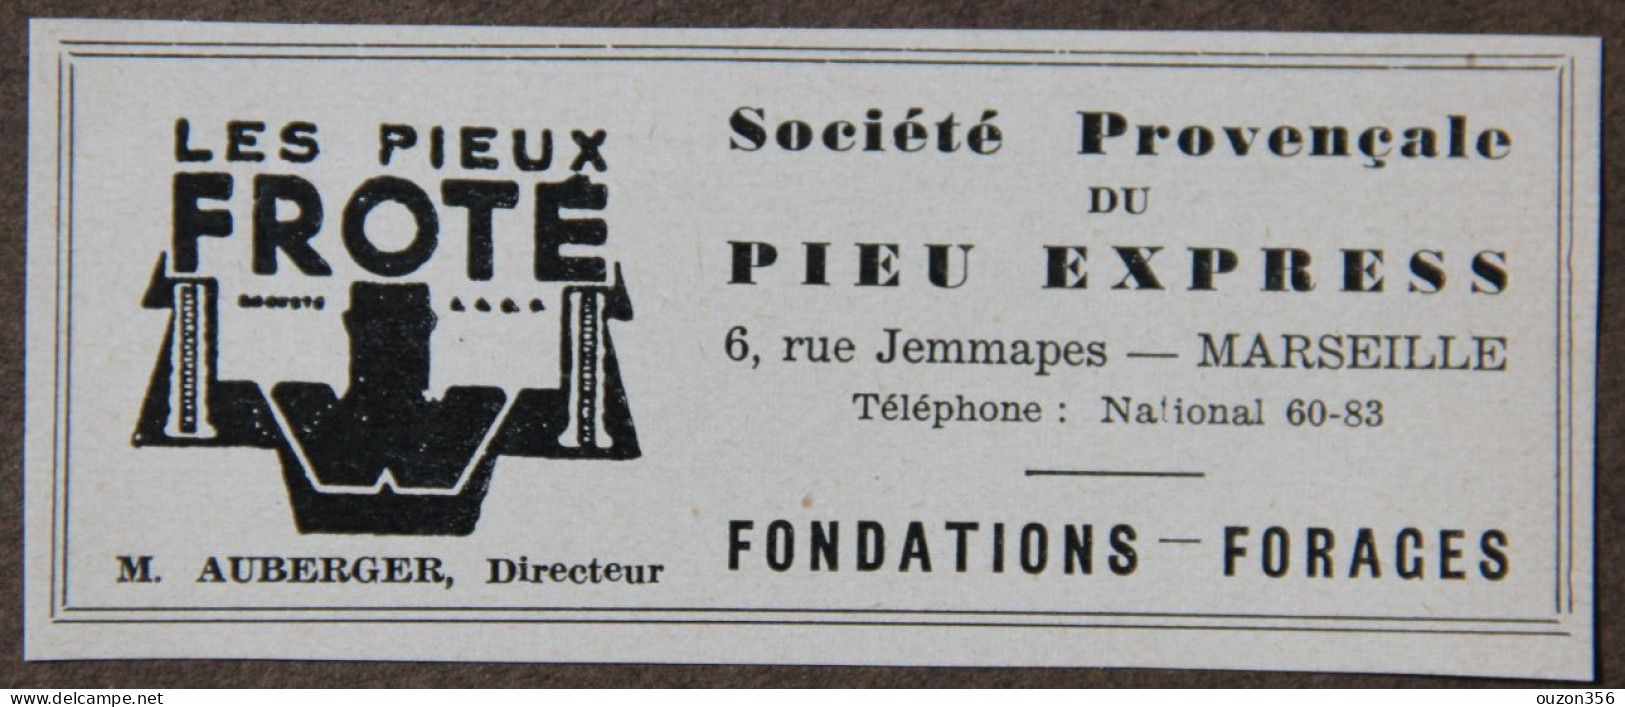 Publicité, Sté Provençale Du Pieu Express, Les Pieux Froté, Fondations, Forages, Marseille, 1951 - Advertising